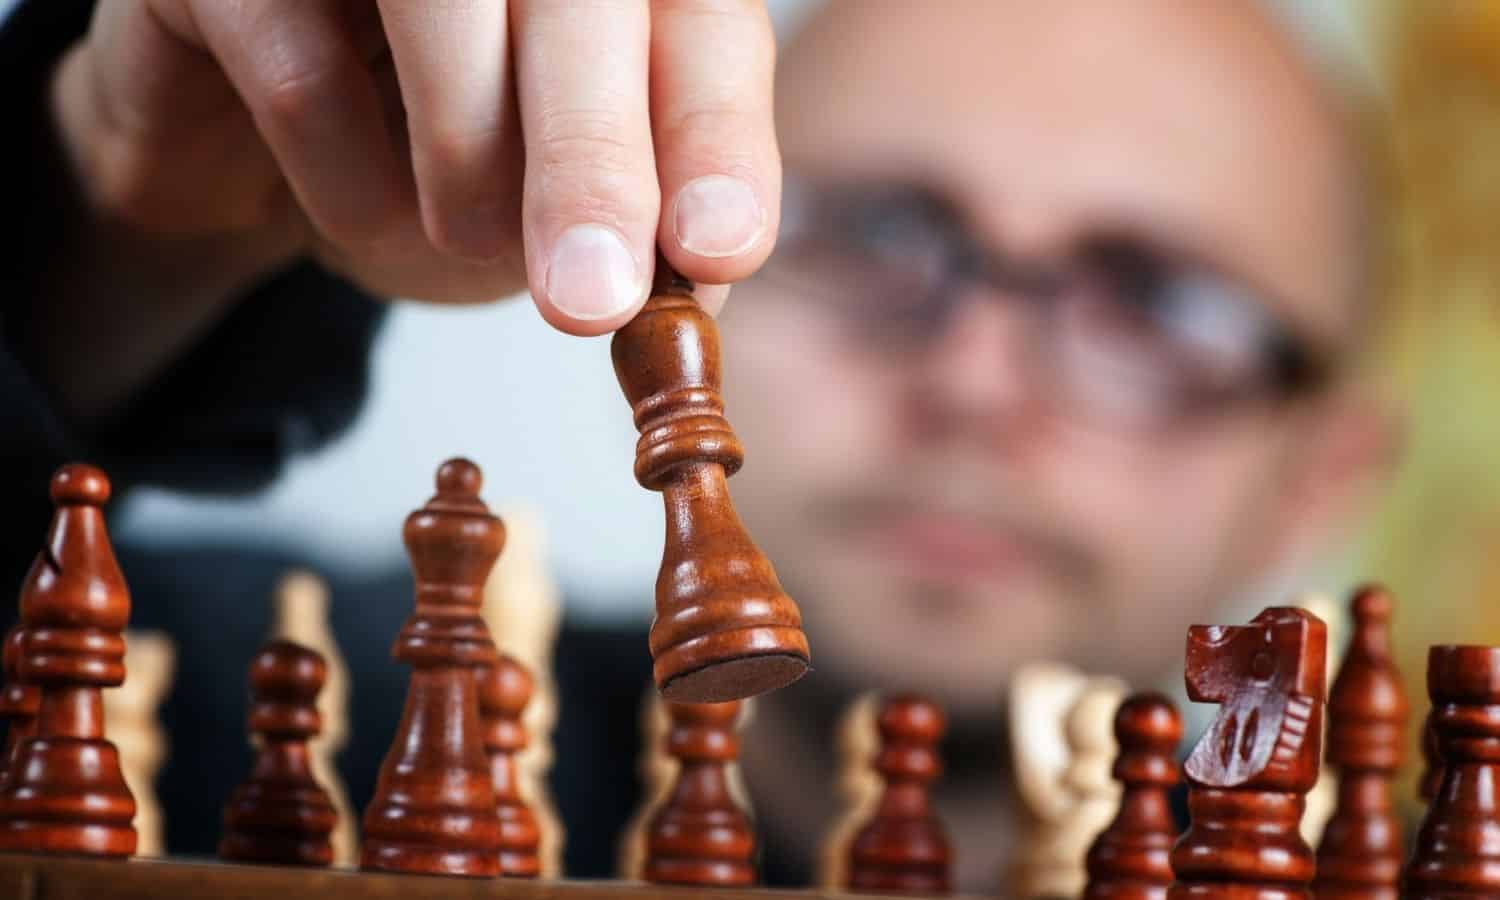 How Vladimir Kramnik Became A Super Grandmaster 